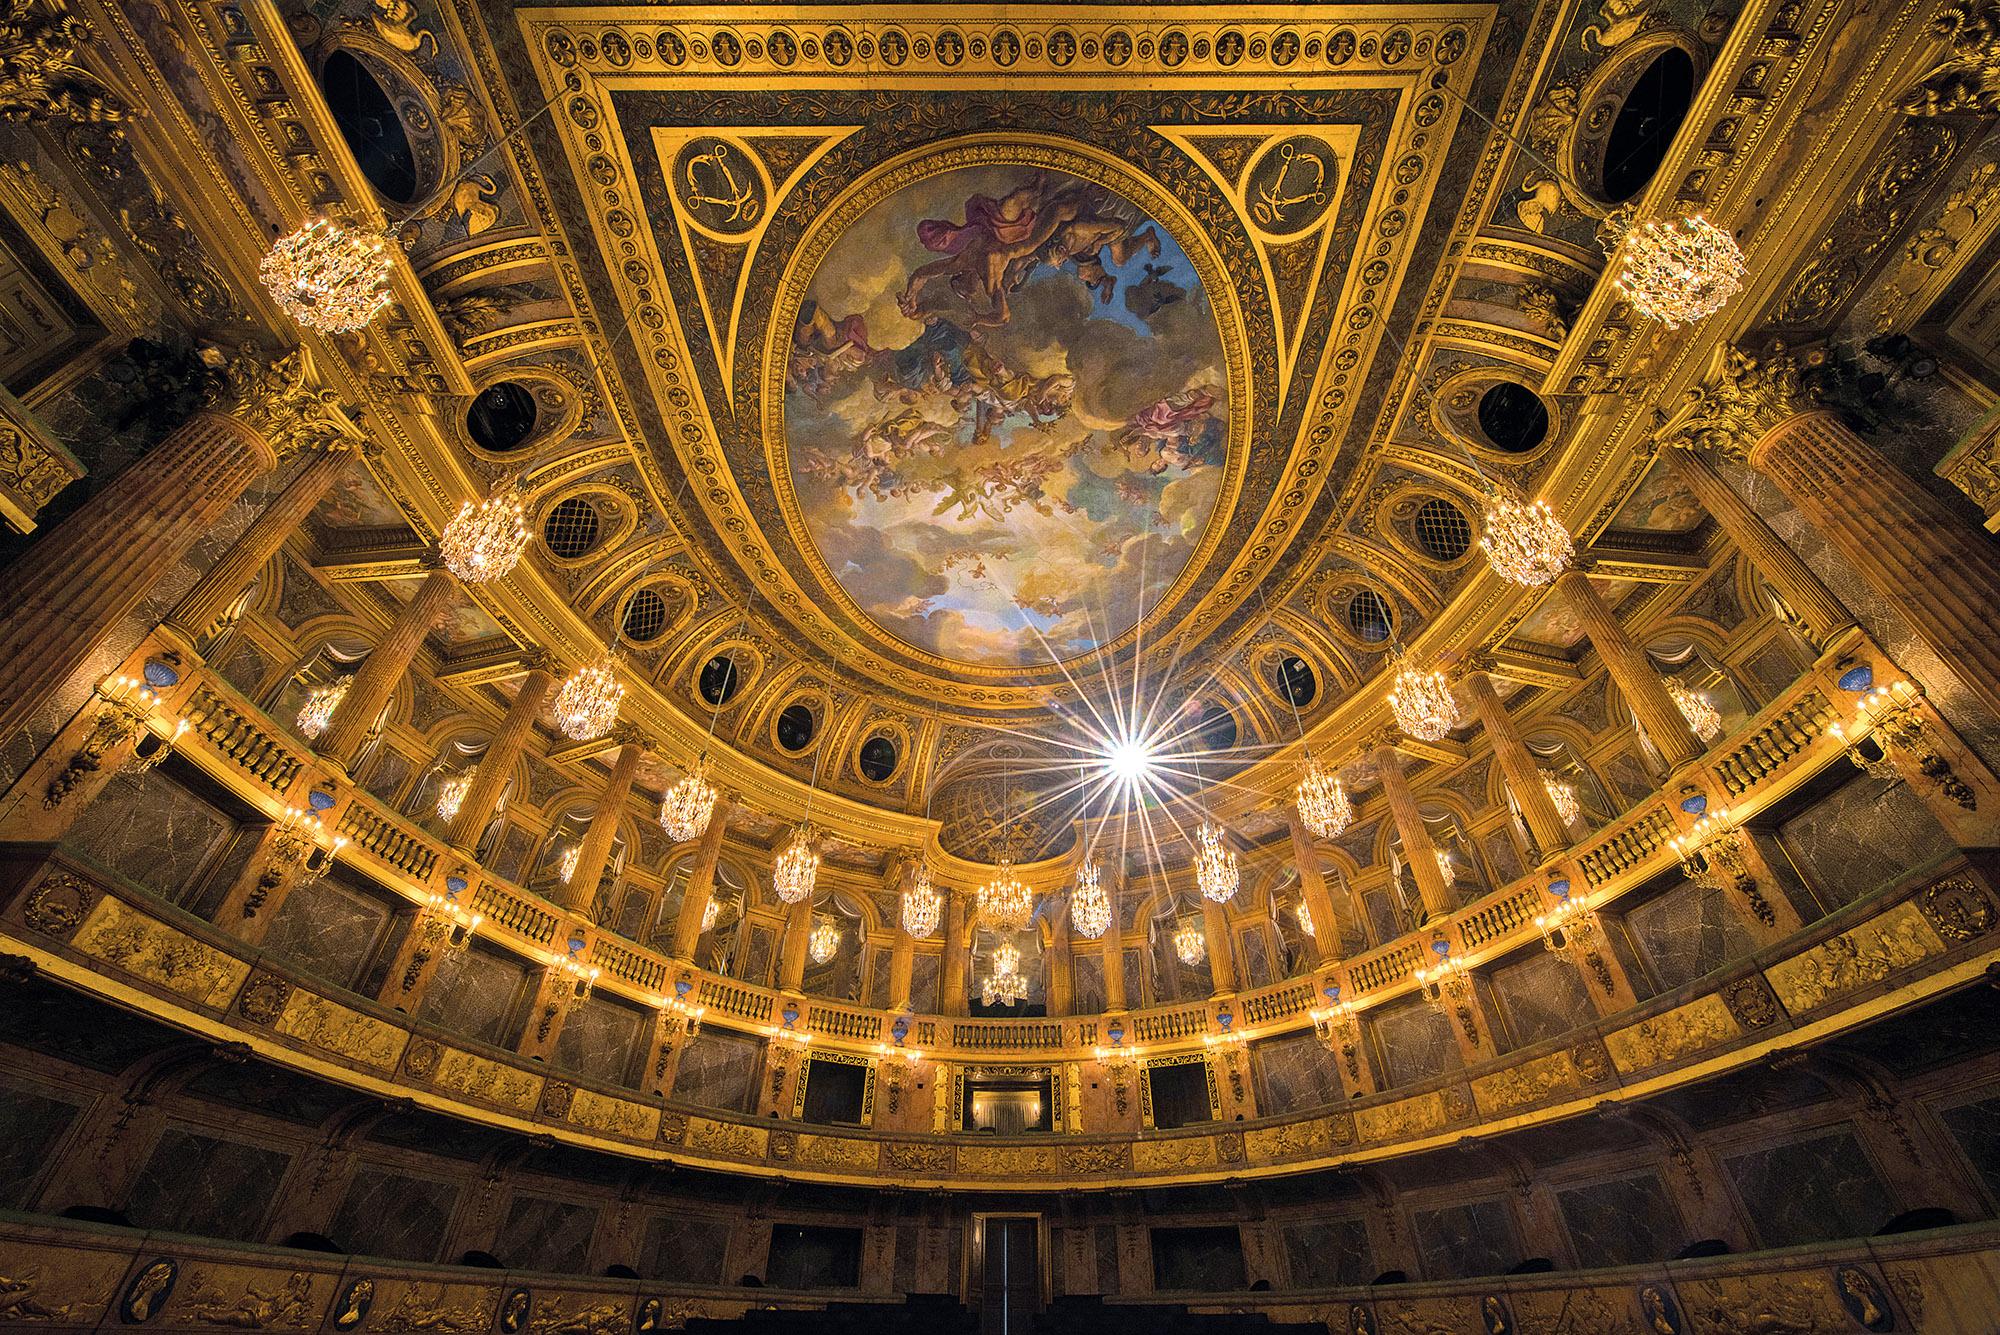 Inauguré en 1770 sous le règne de Louis XV, l'Opéra Royal était la plus grande salle de concert en Europe. – © Thomas Garnier